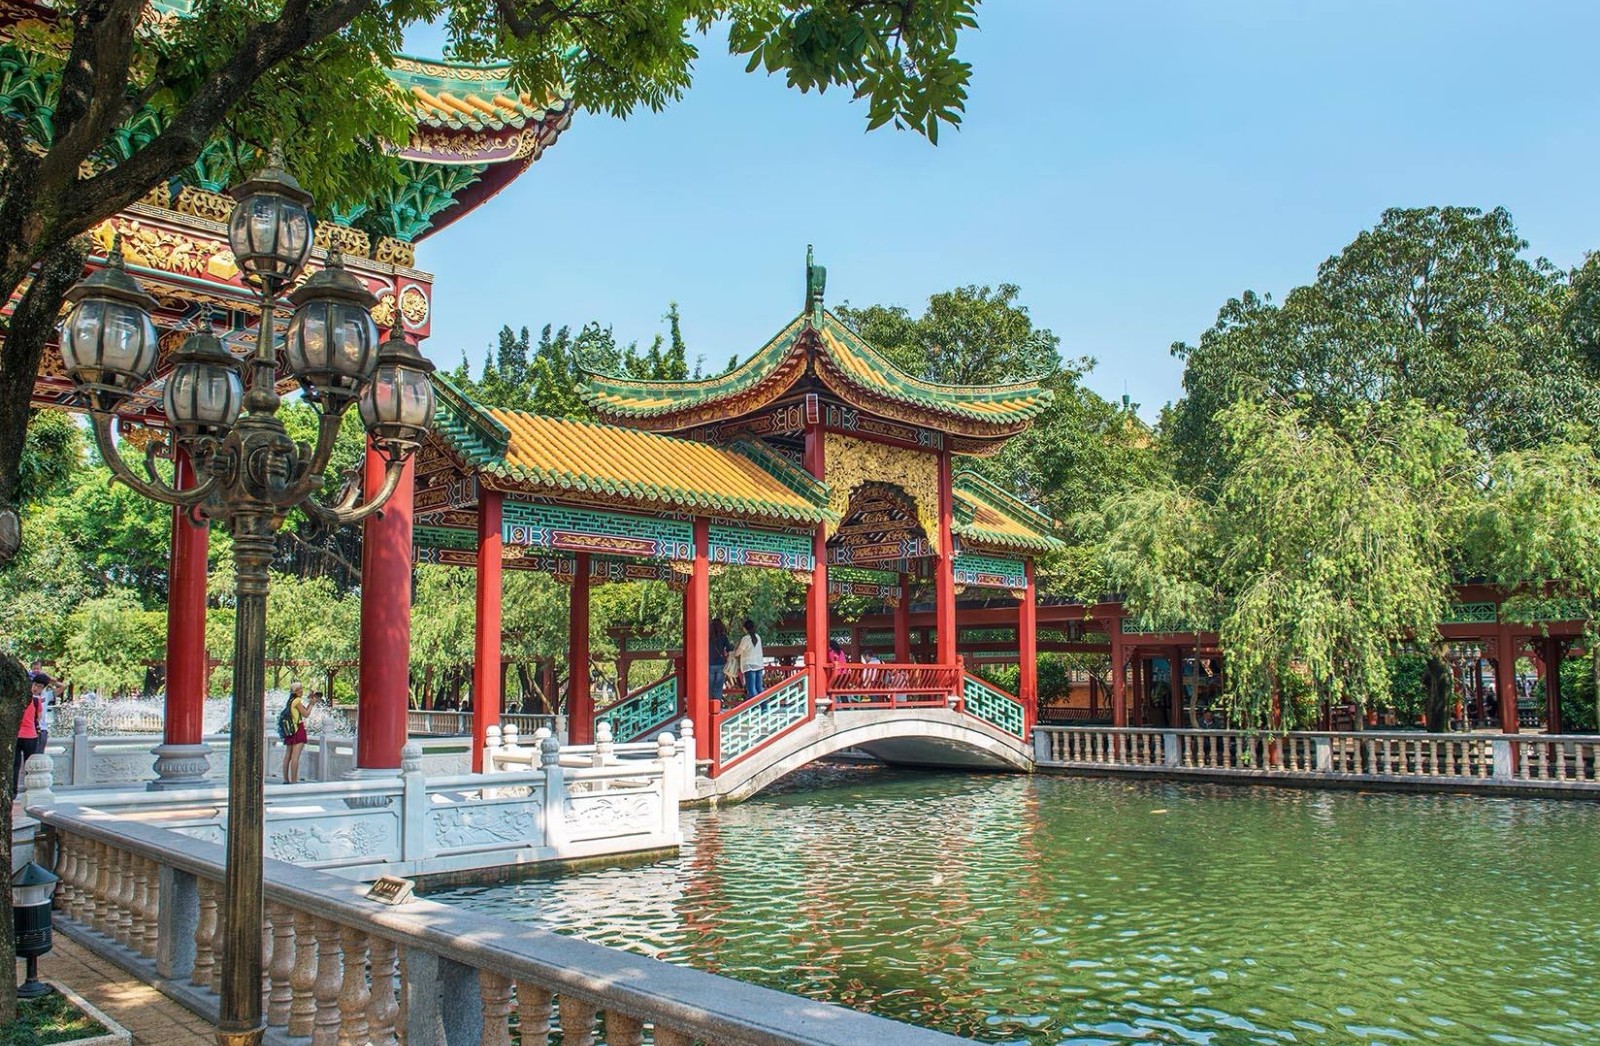 宝墨园,坐落在广东省广州市内,是广东省内一处著名的园林景区